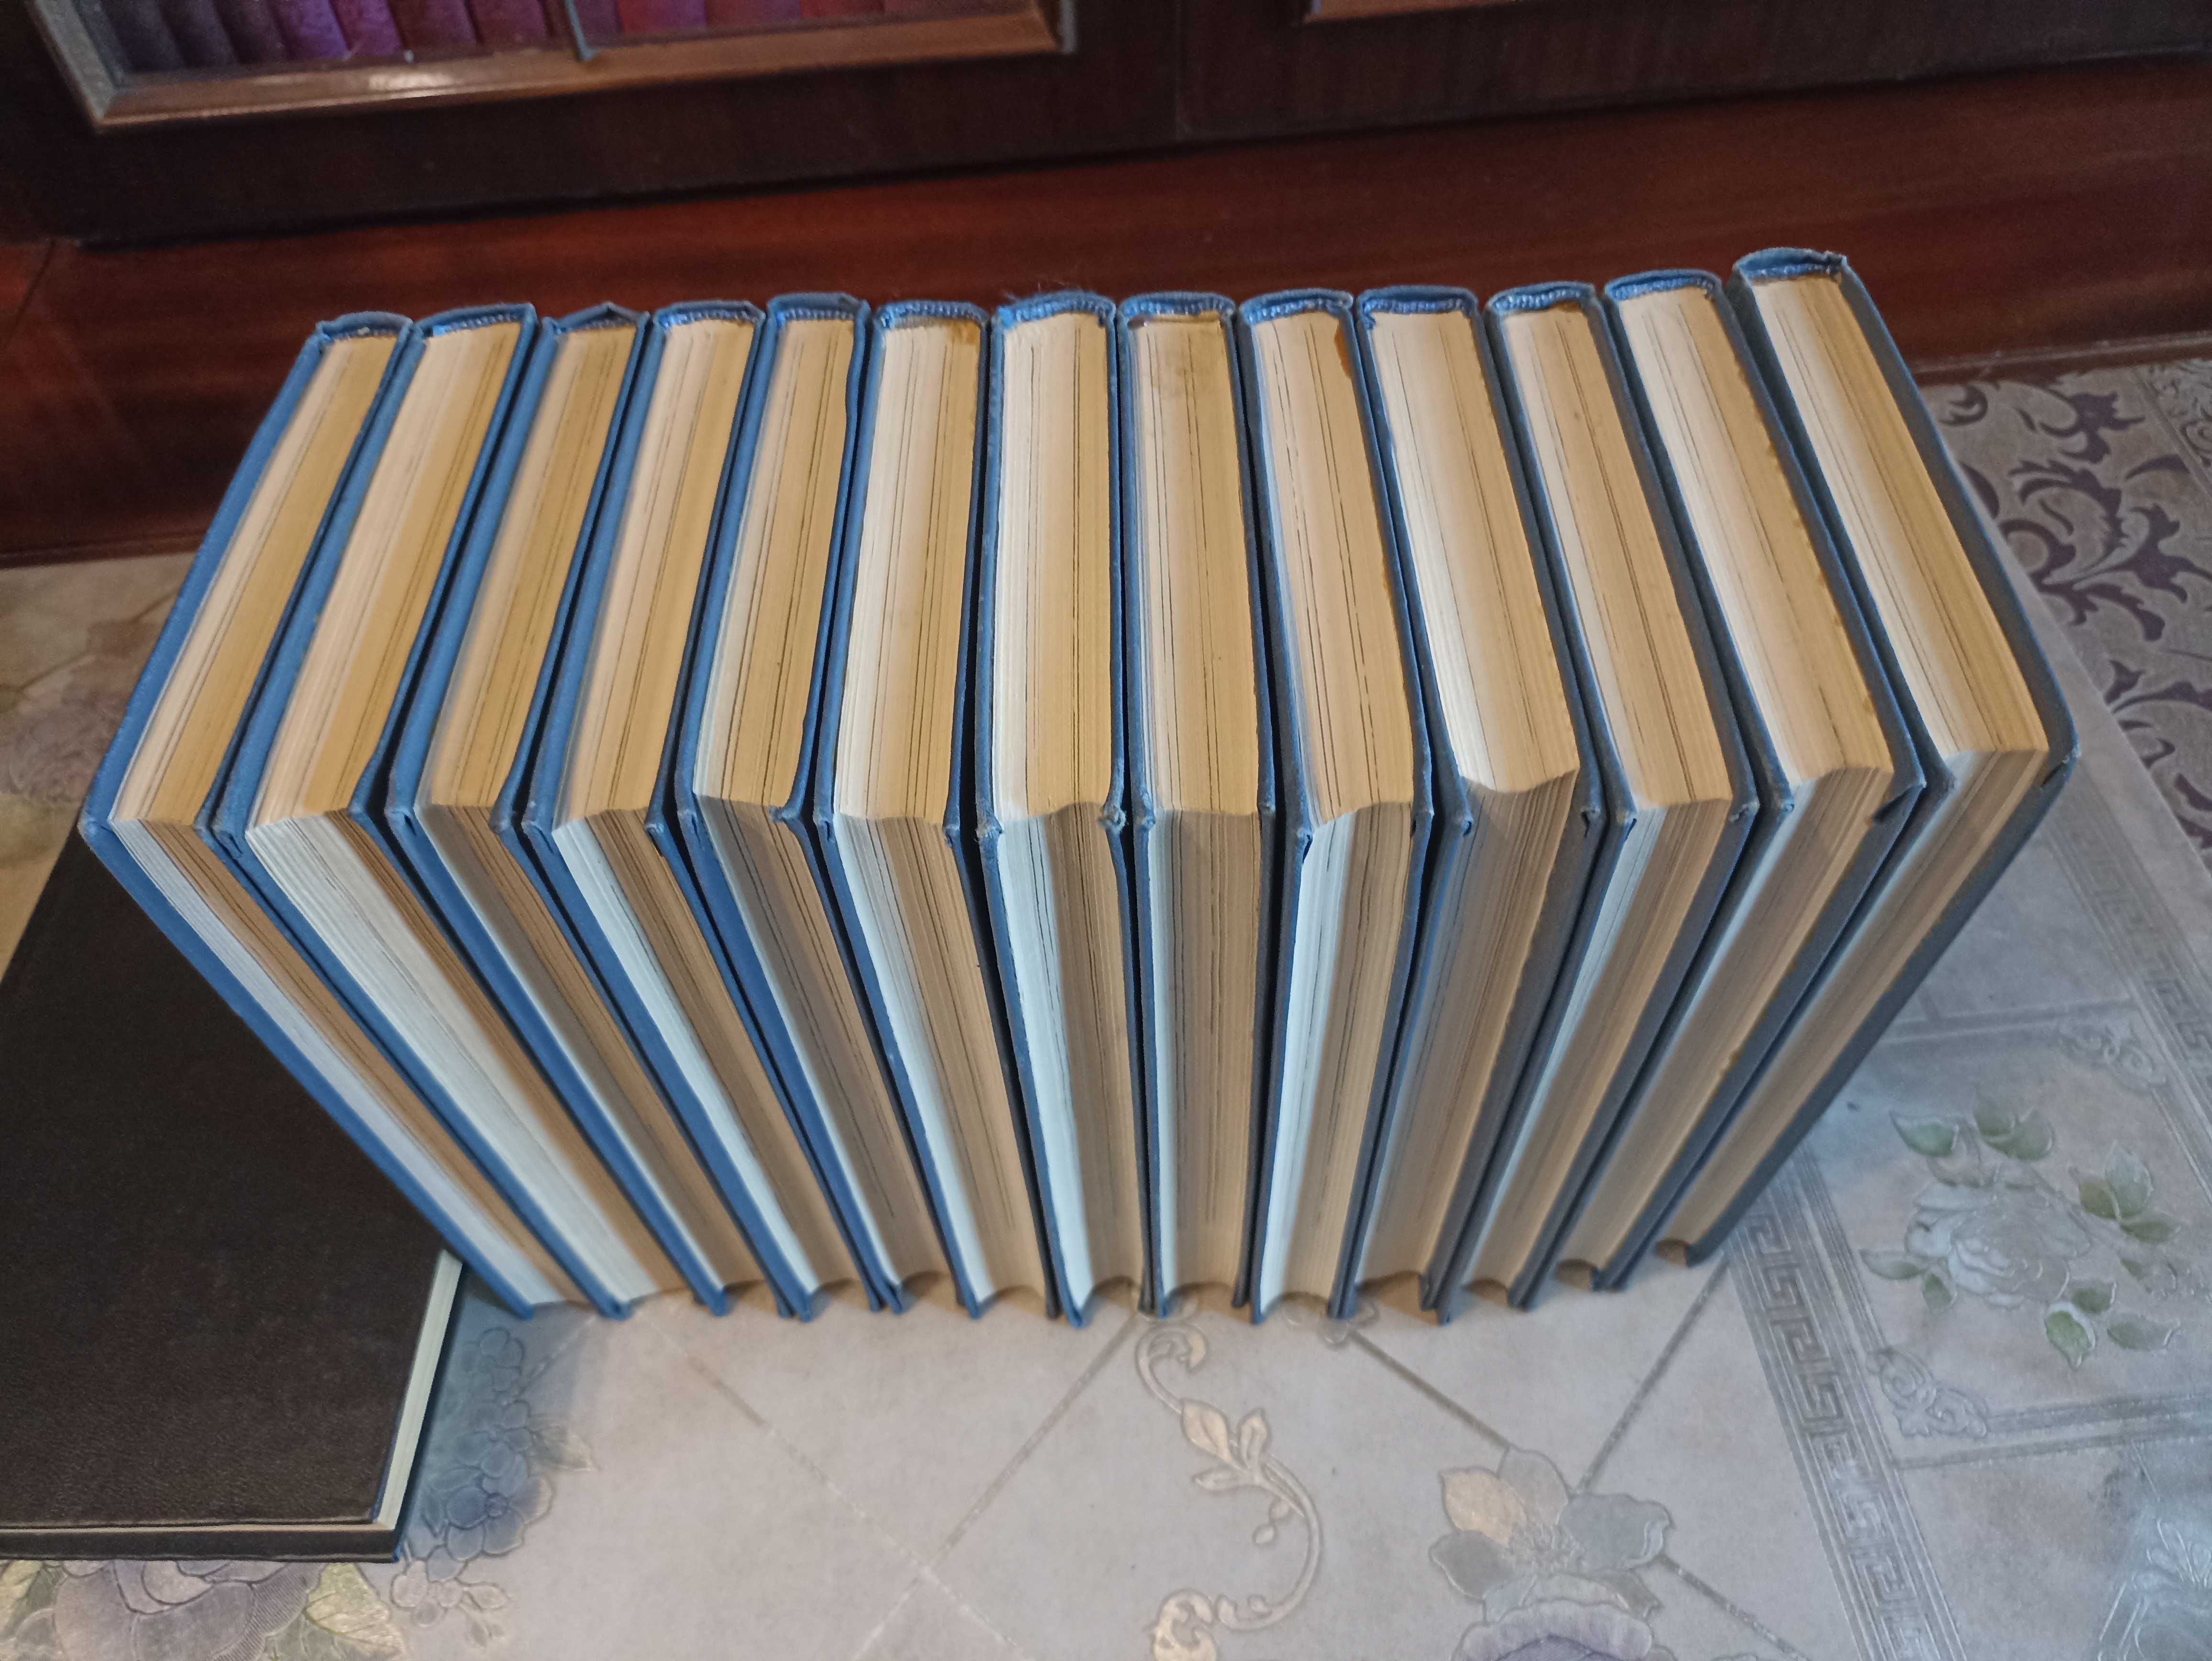 Джек Лондон - Собрание сочинений в 13 томах